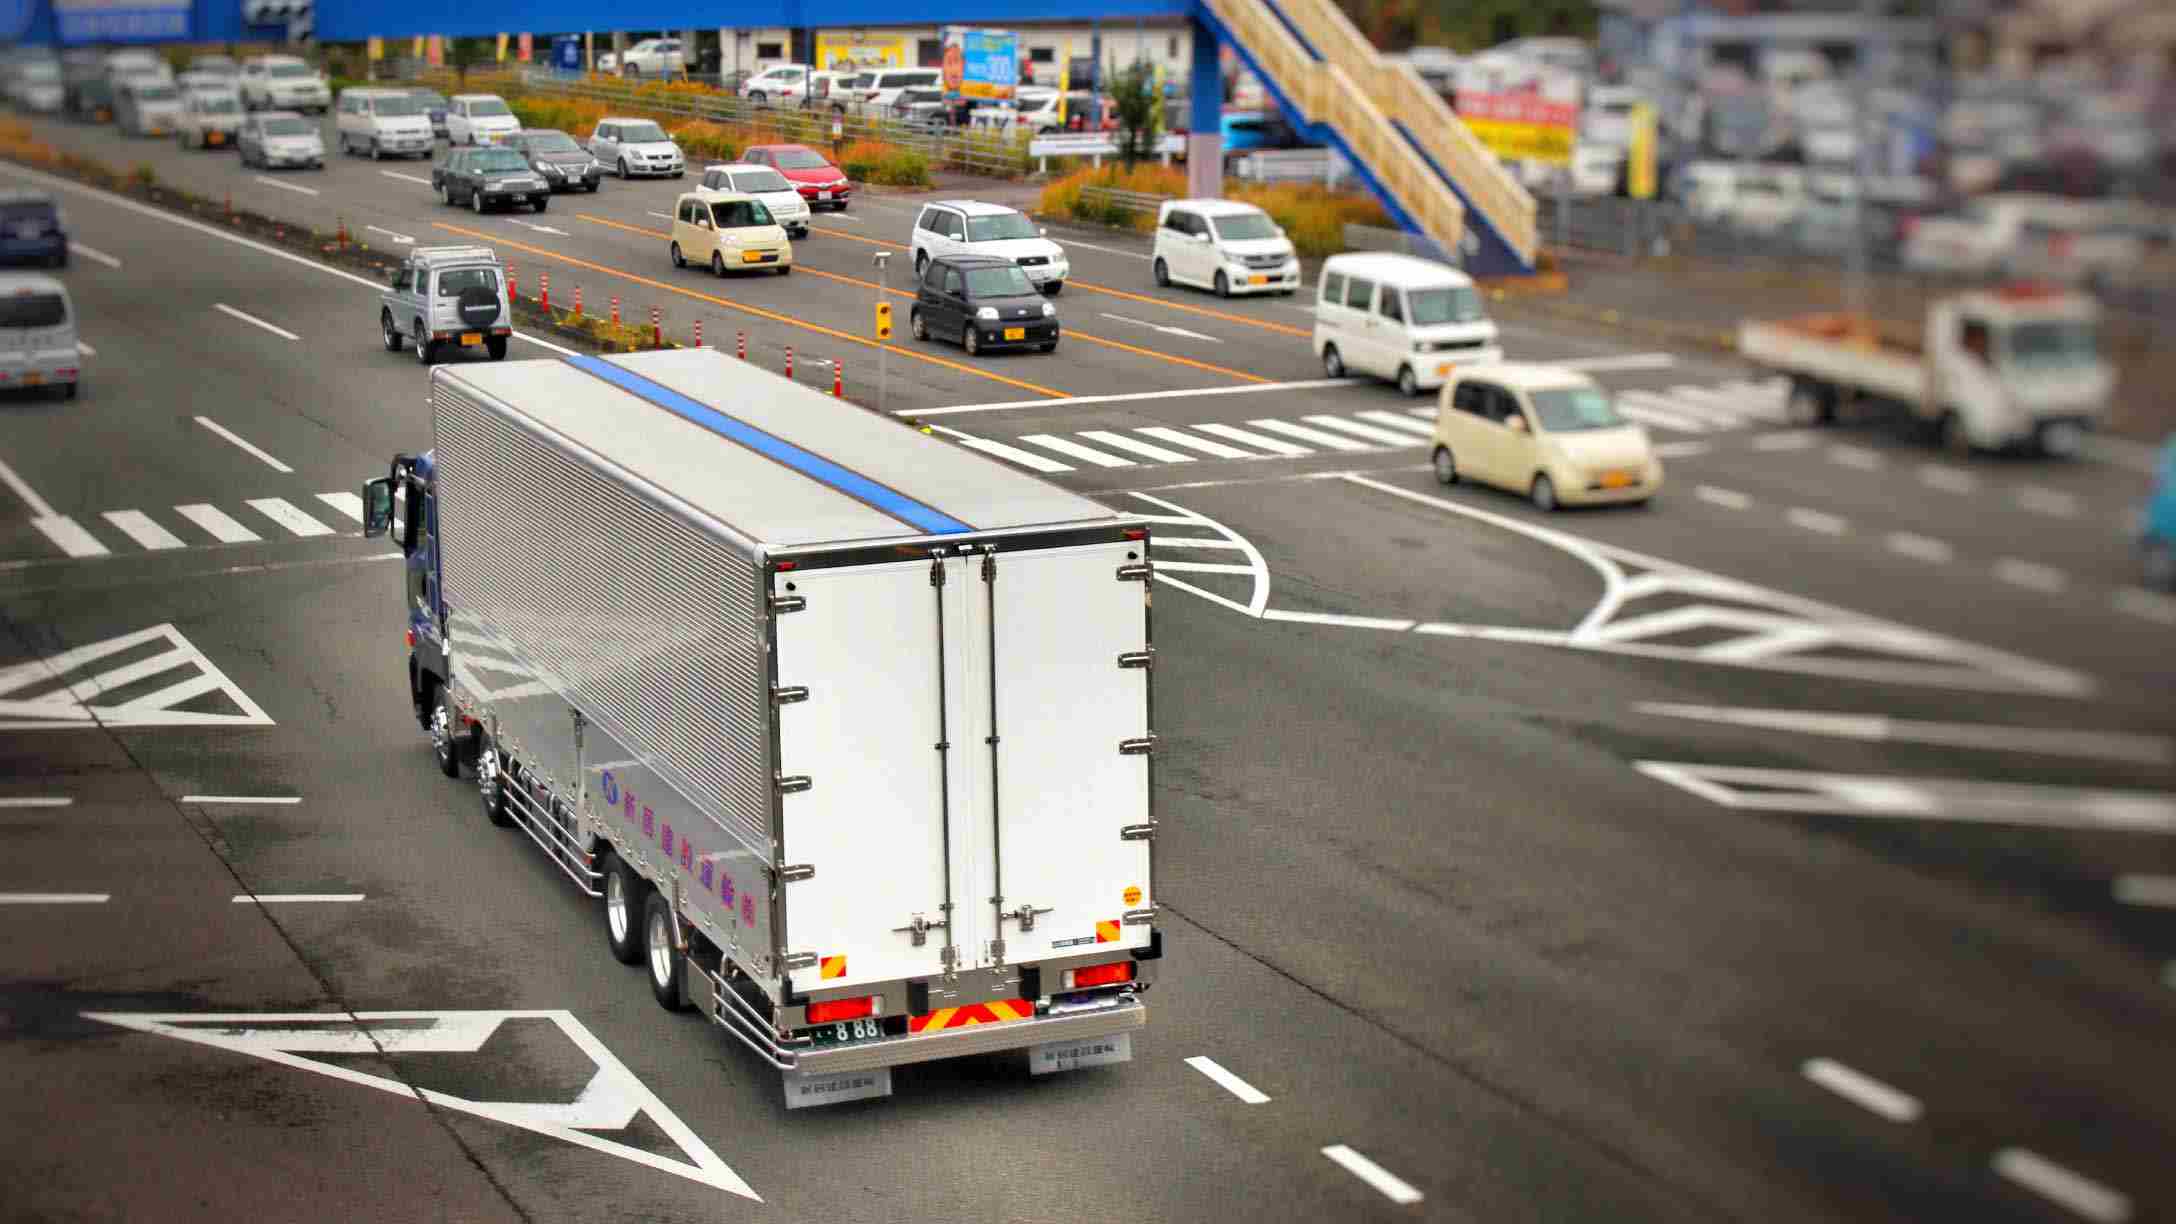 Imagen de un camión en medio de un cruce de una ciudad, con vehículos alrededor